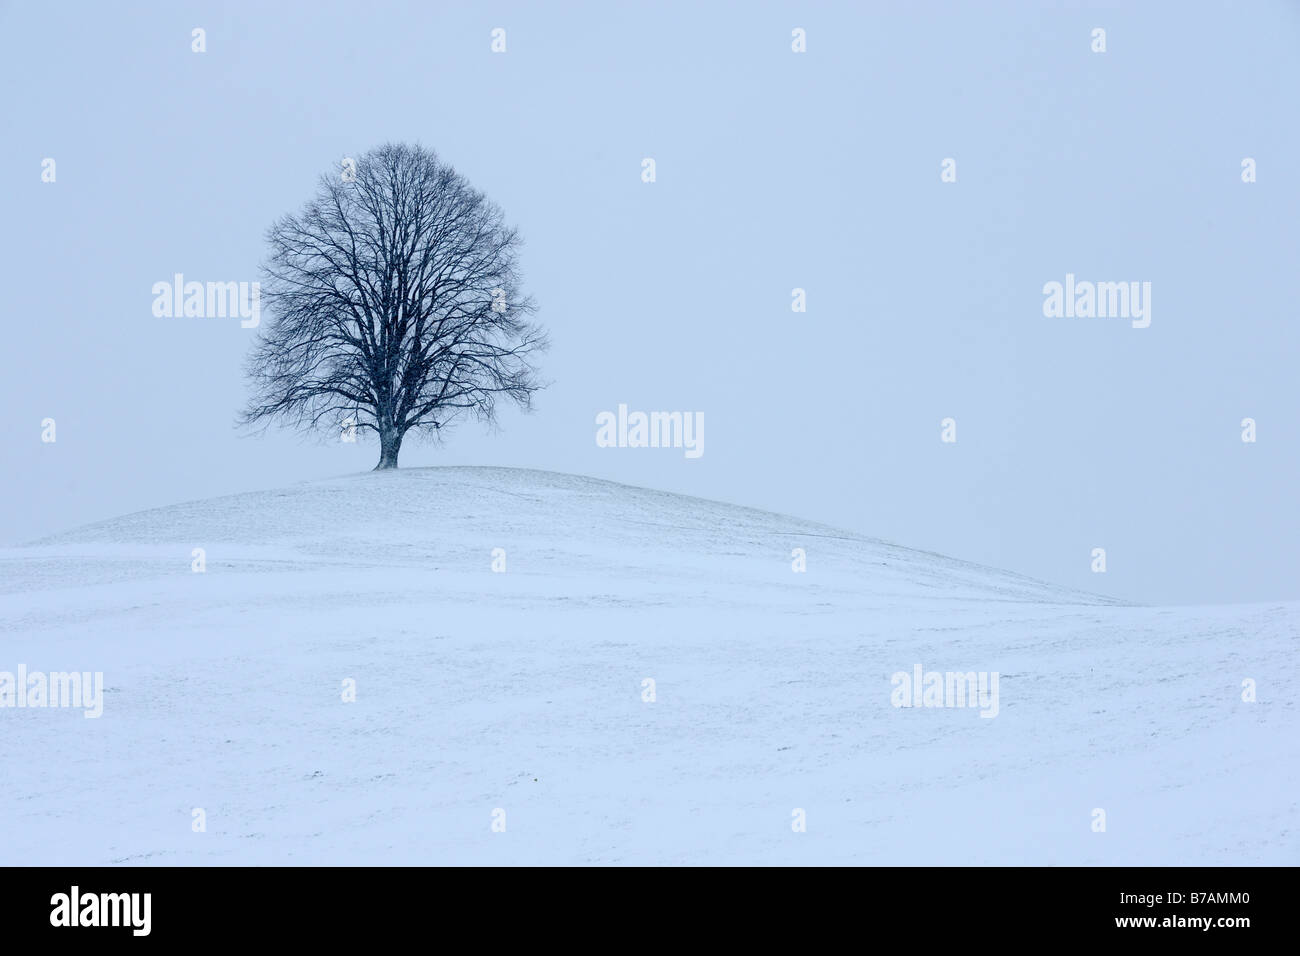 Tilleul, tilleul, le tilleul (Tilia) sur moraine couverte de neige fraîchement hill Banque D'Images